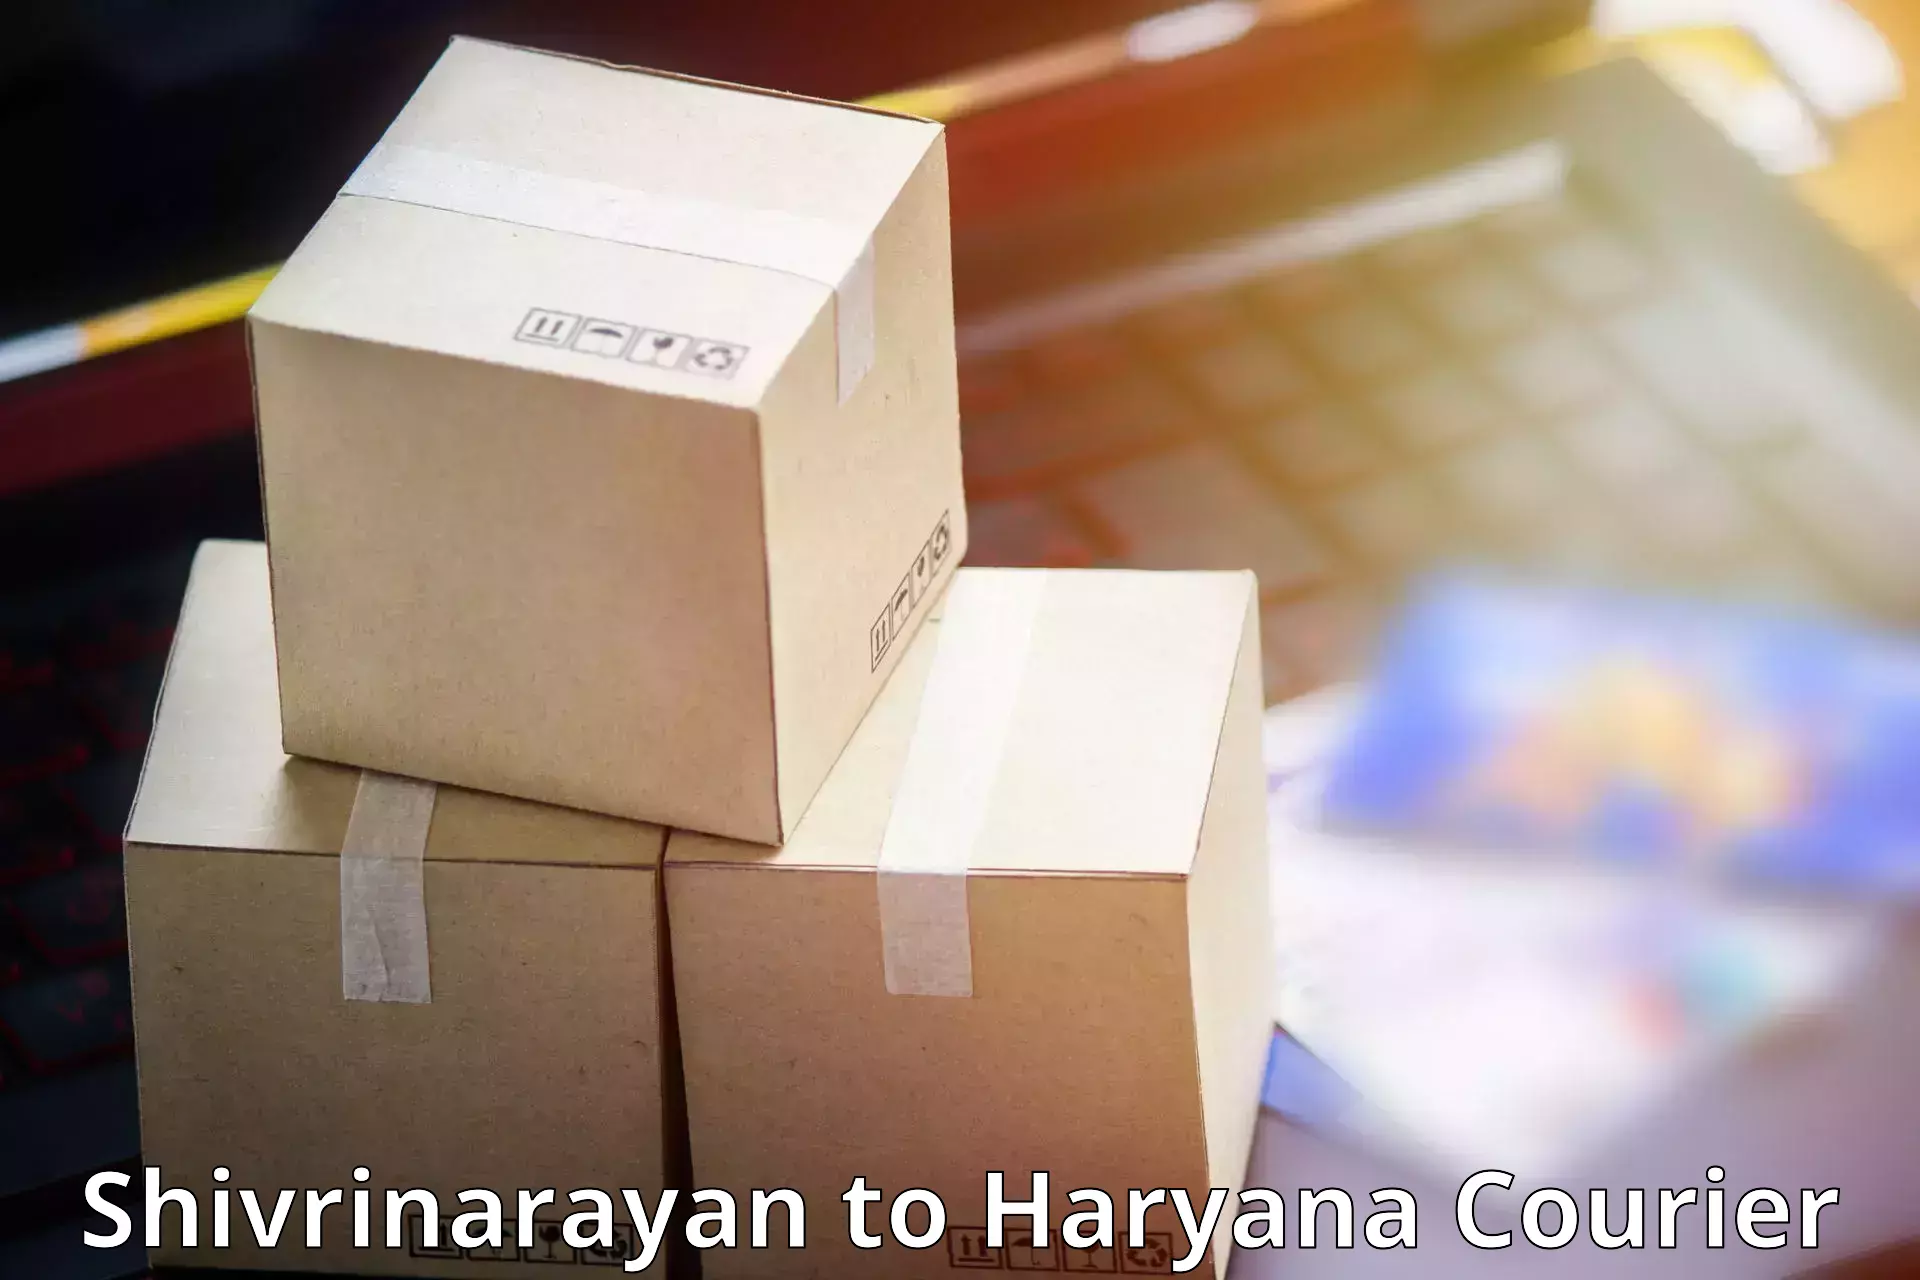 24/7 courier service Shivrinarayan to Jhajjar